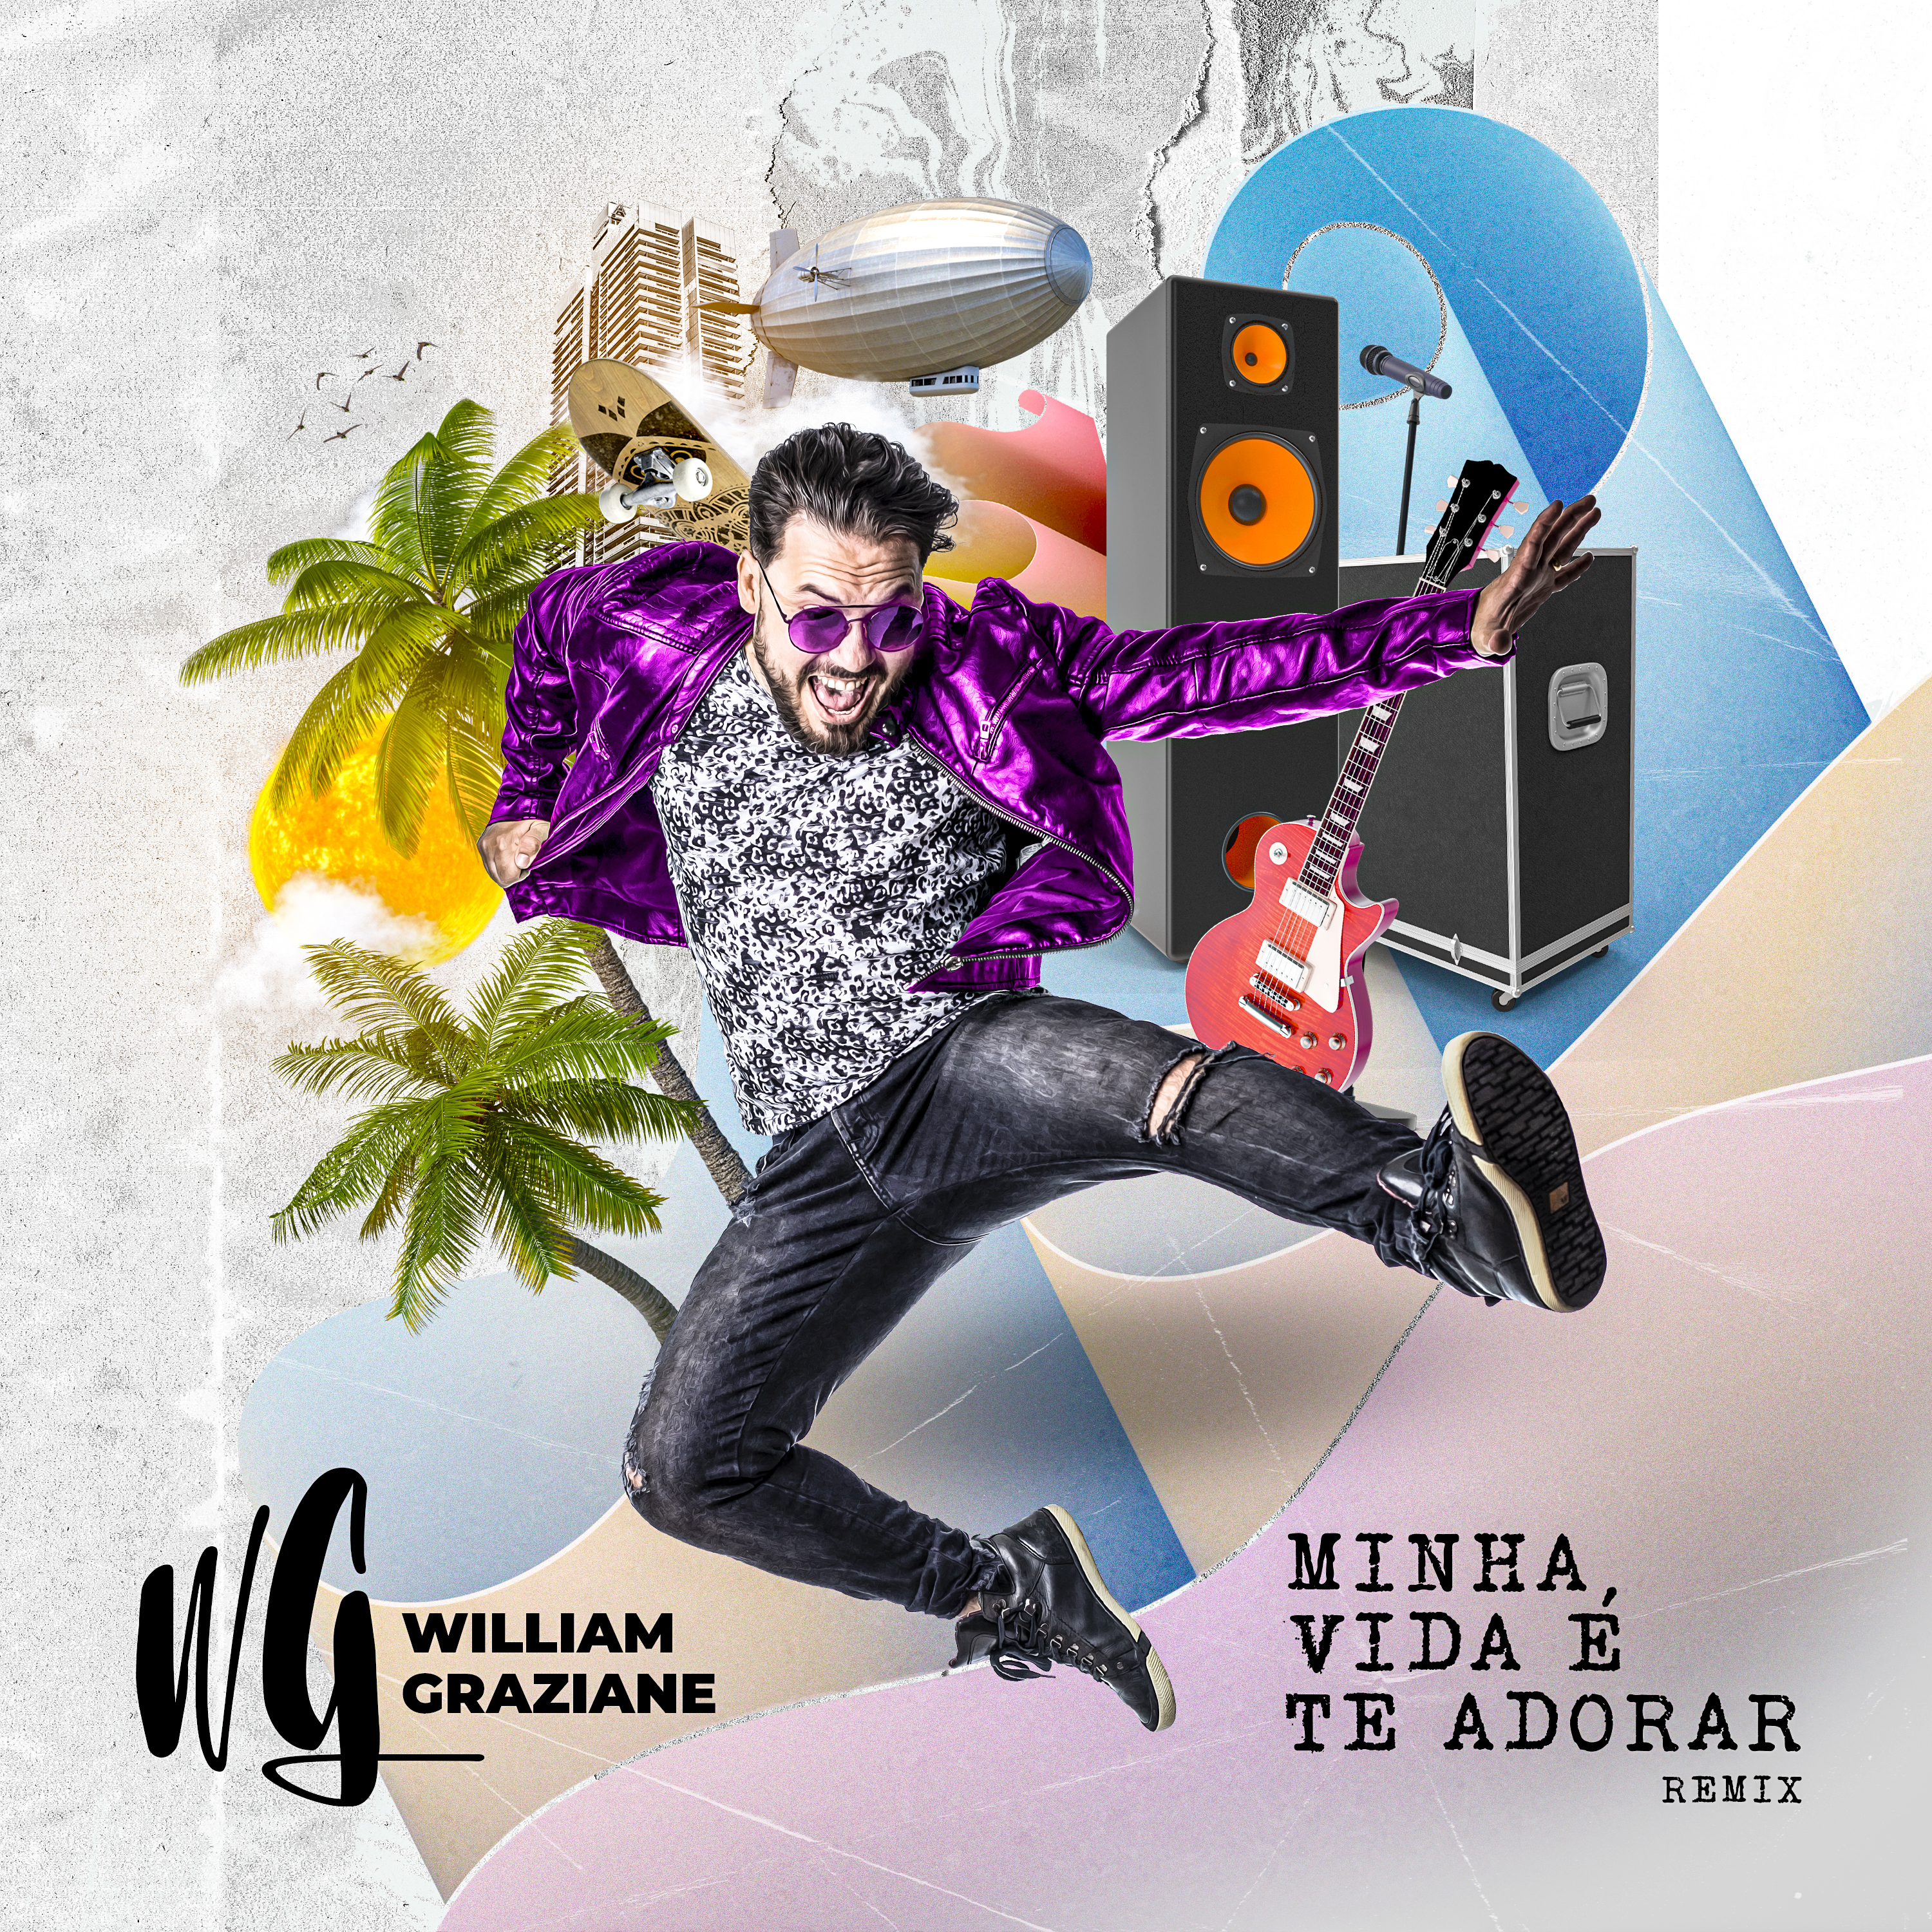 Novo single de William Graziane “Minha Vida É Te Adorar” chega às plataformas digitais